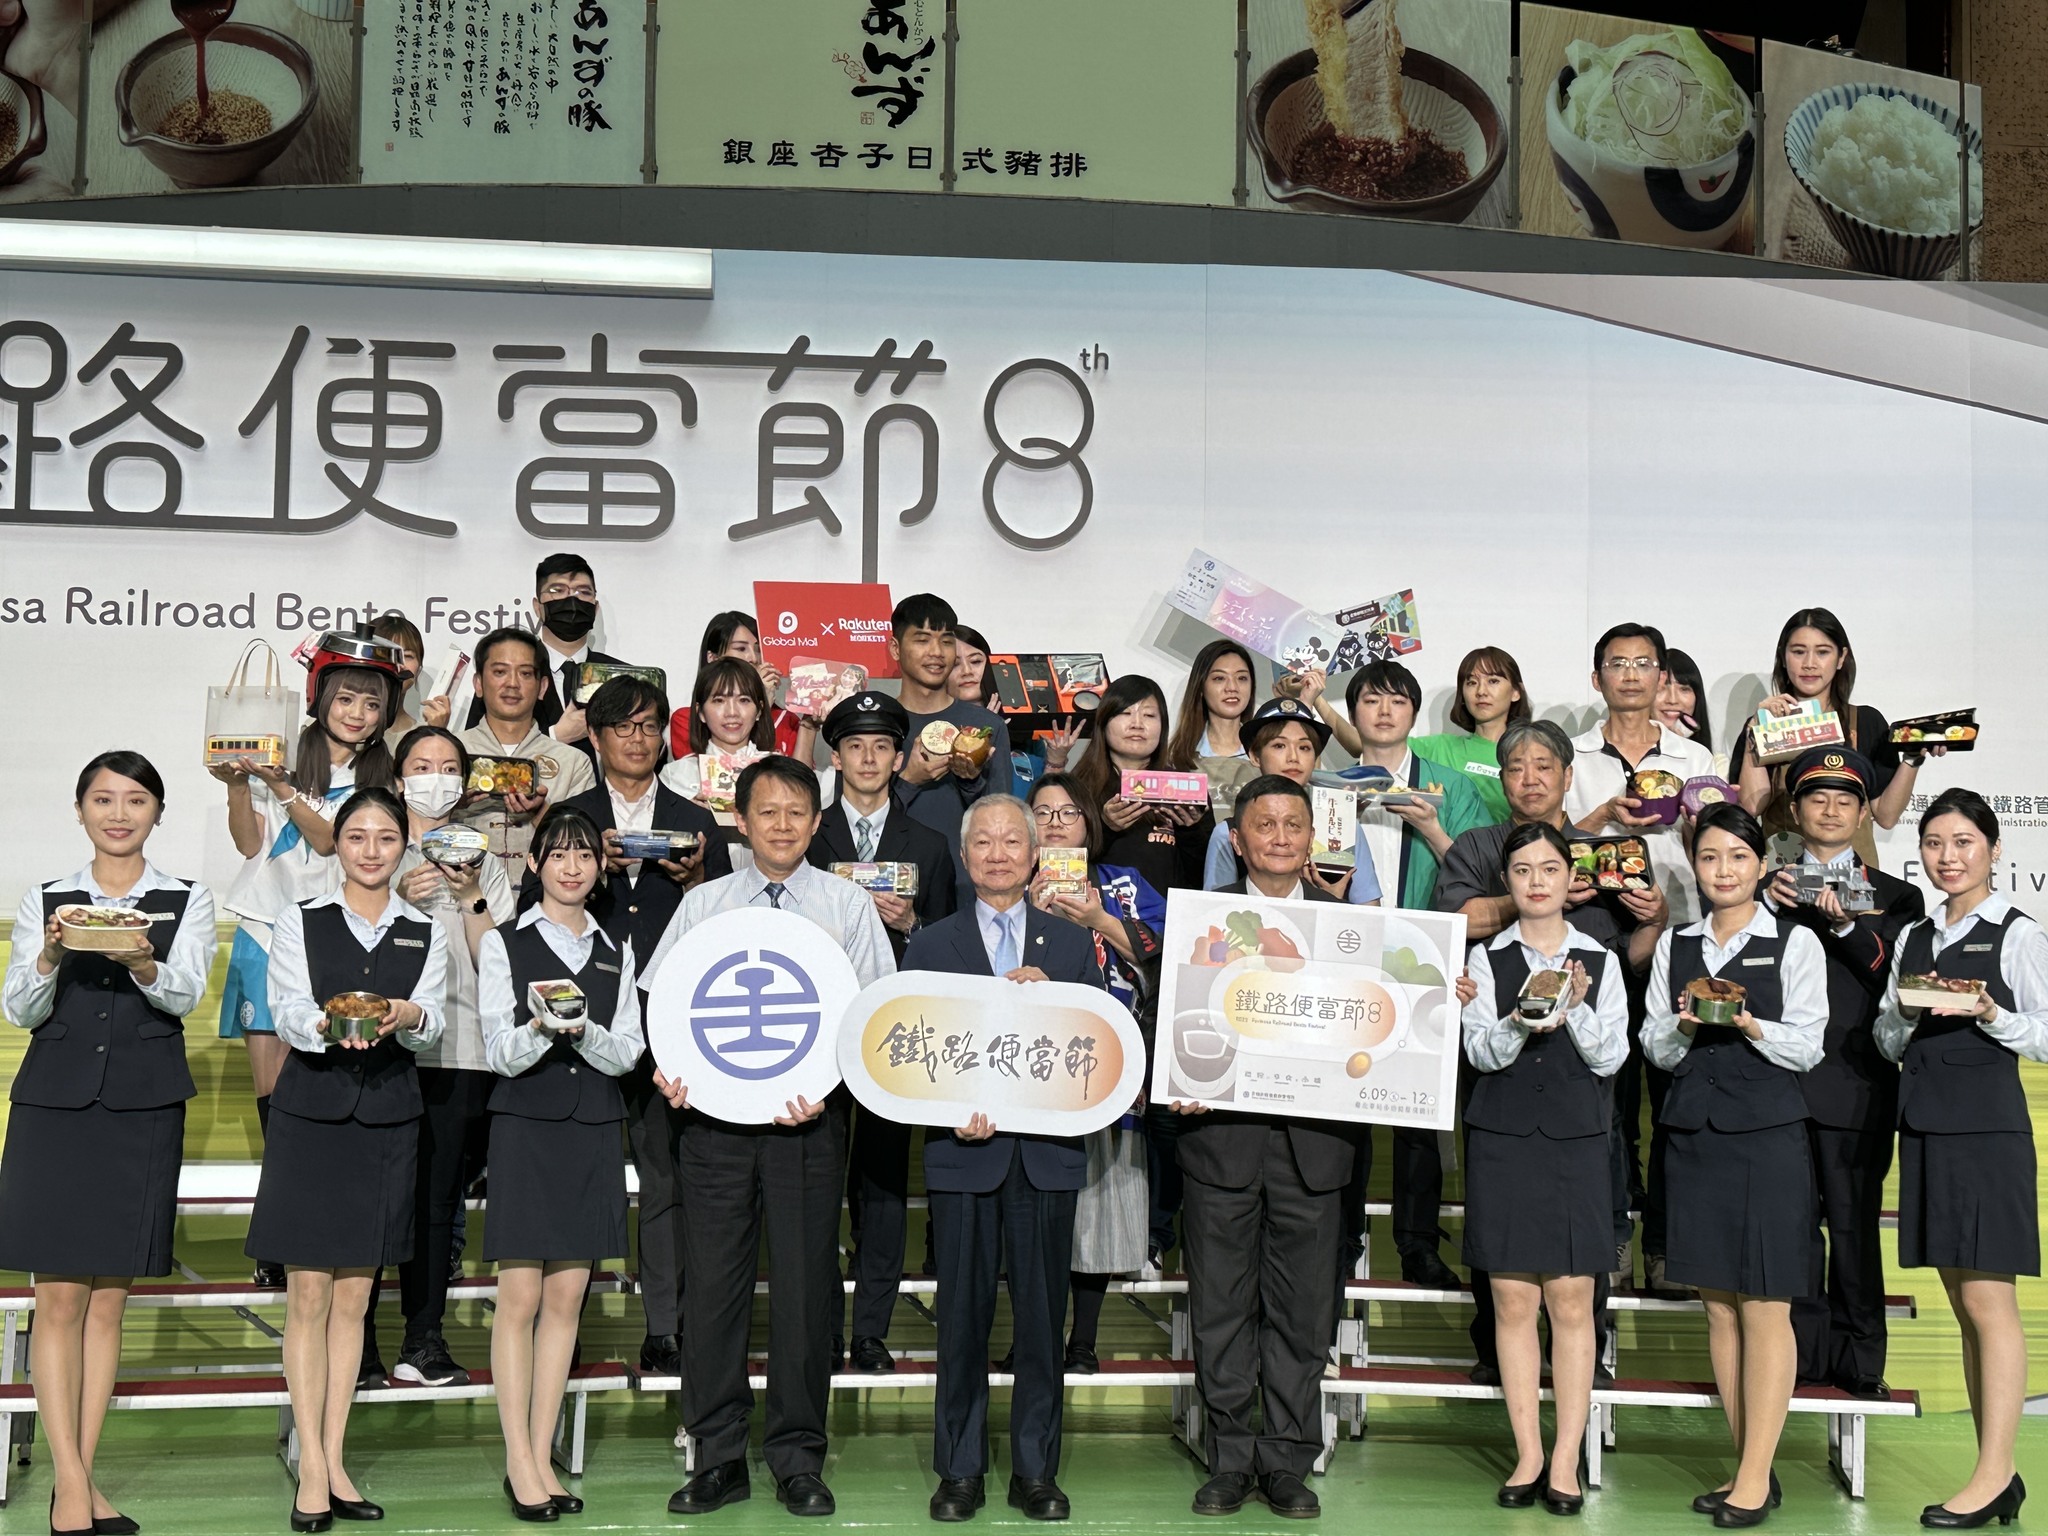 品嘗台灣日本鐵道食旅 鐵路便當節6月9日台北車站美味登場 